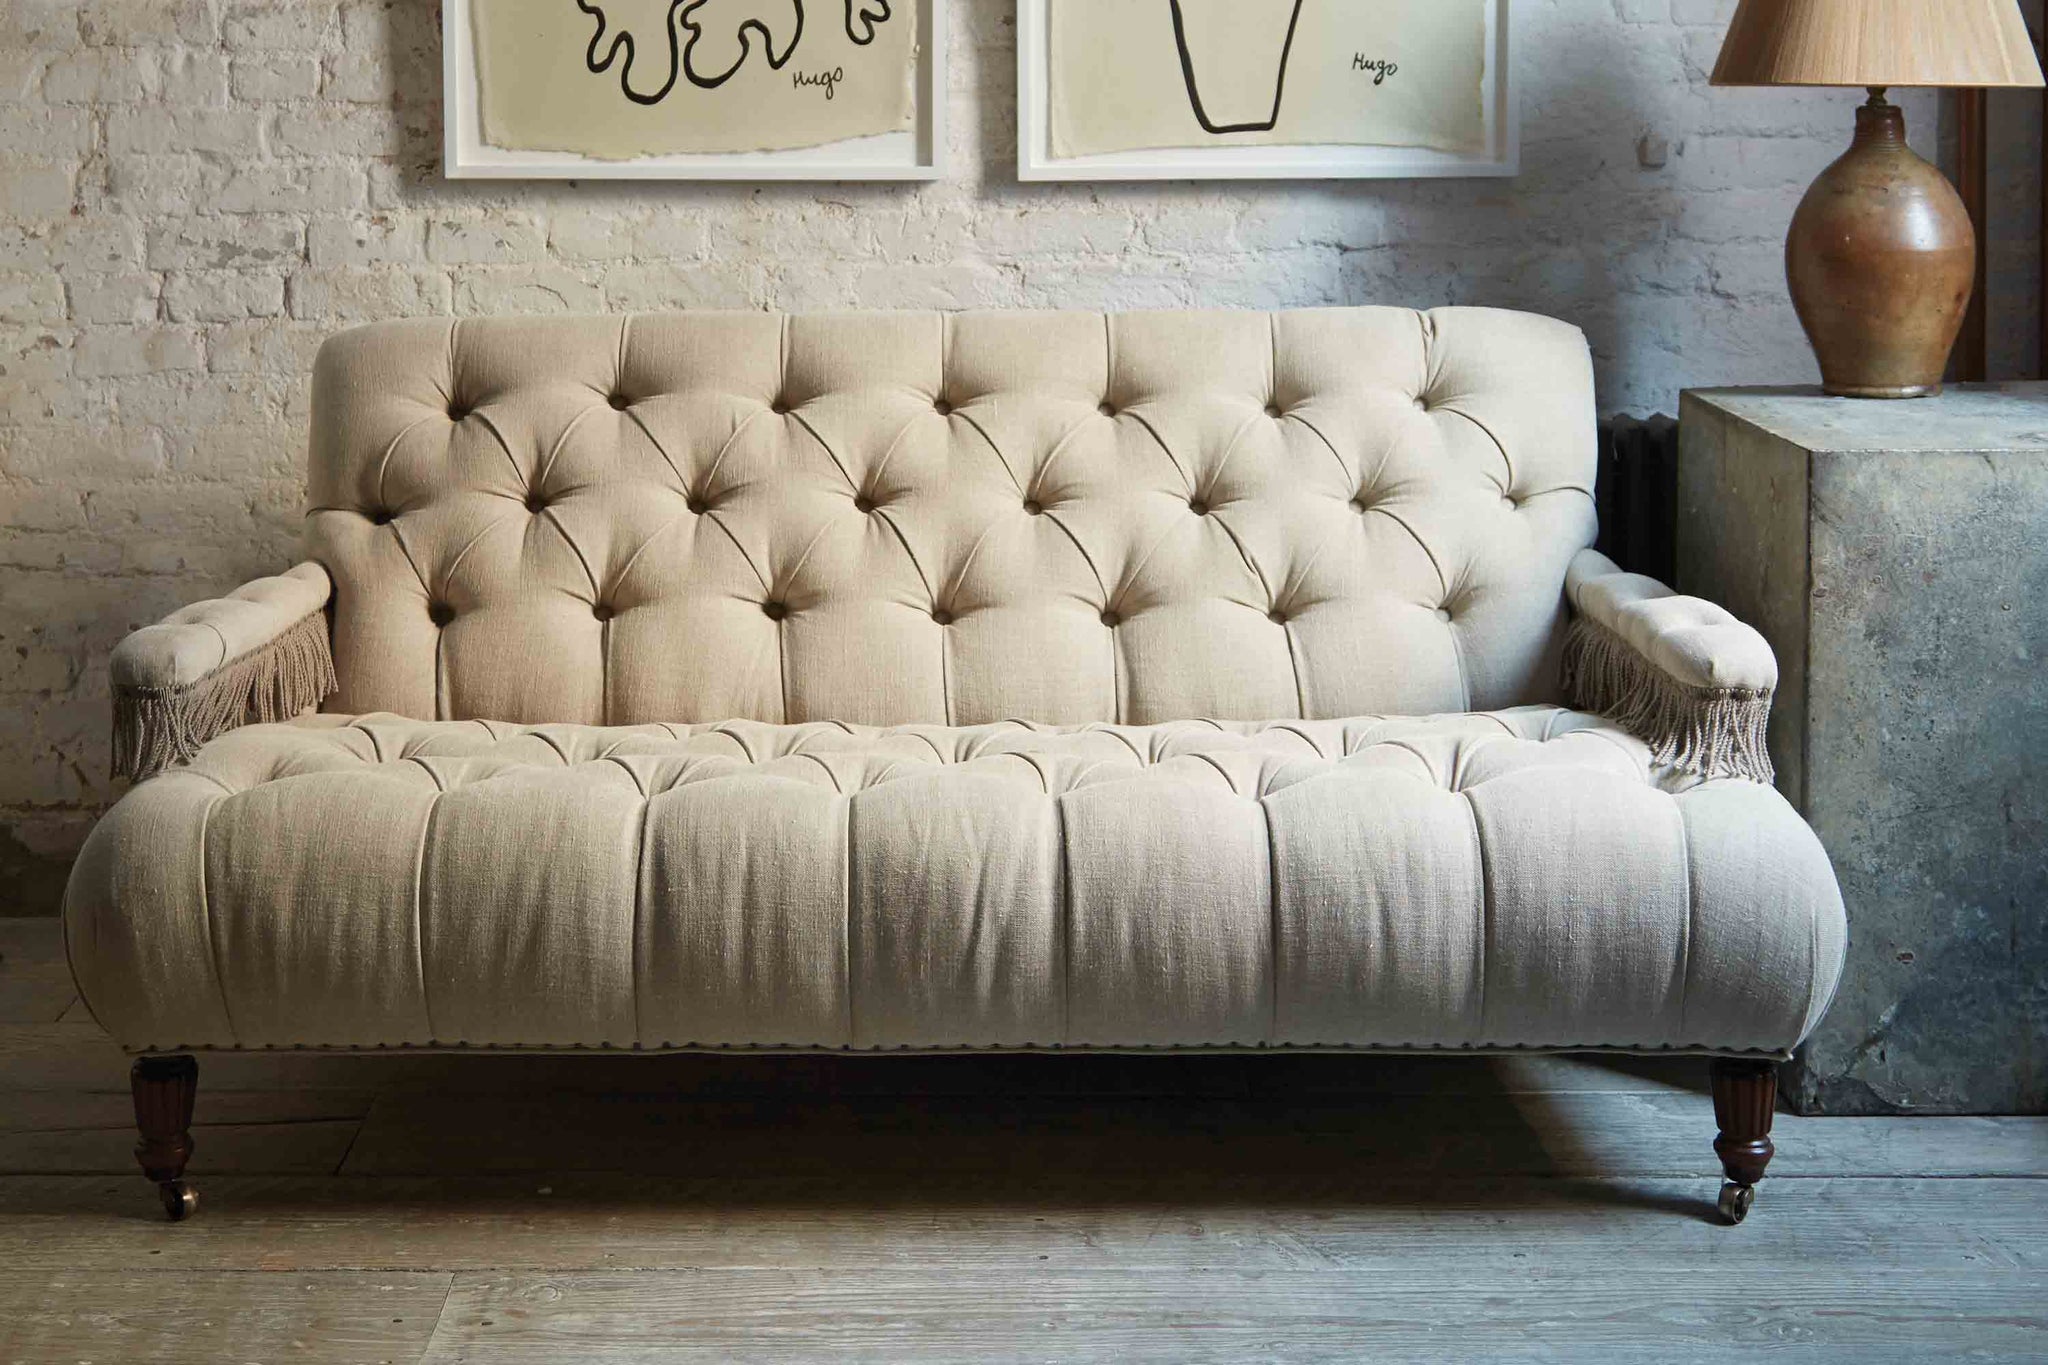  簇绒小型沙发在一个天然的复古亚麻亚麻与流苏在扶手休息. 它在一间有日光、白砖墙、木地板的房间里. 穿着复古亚麻拍的照片. 